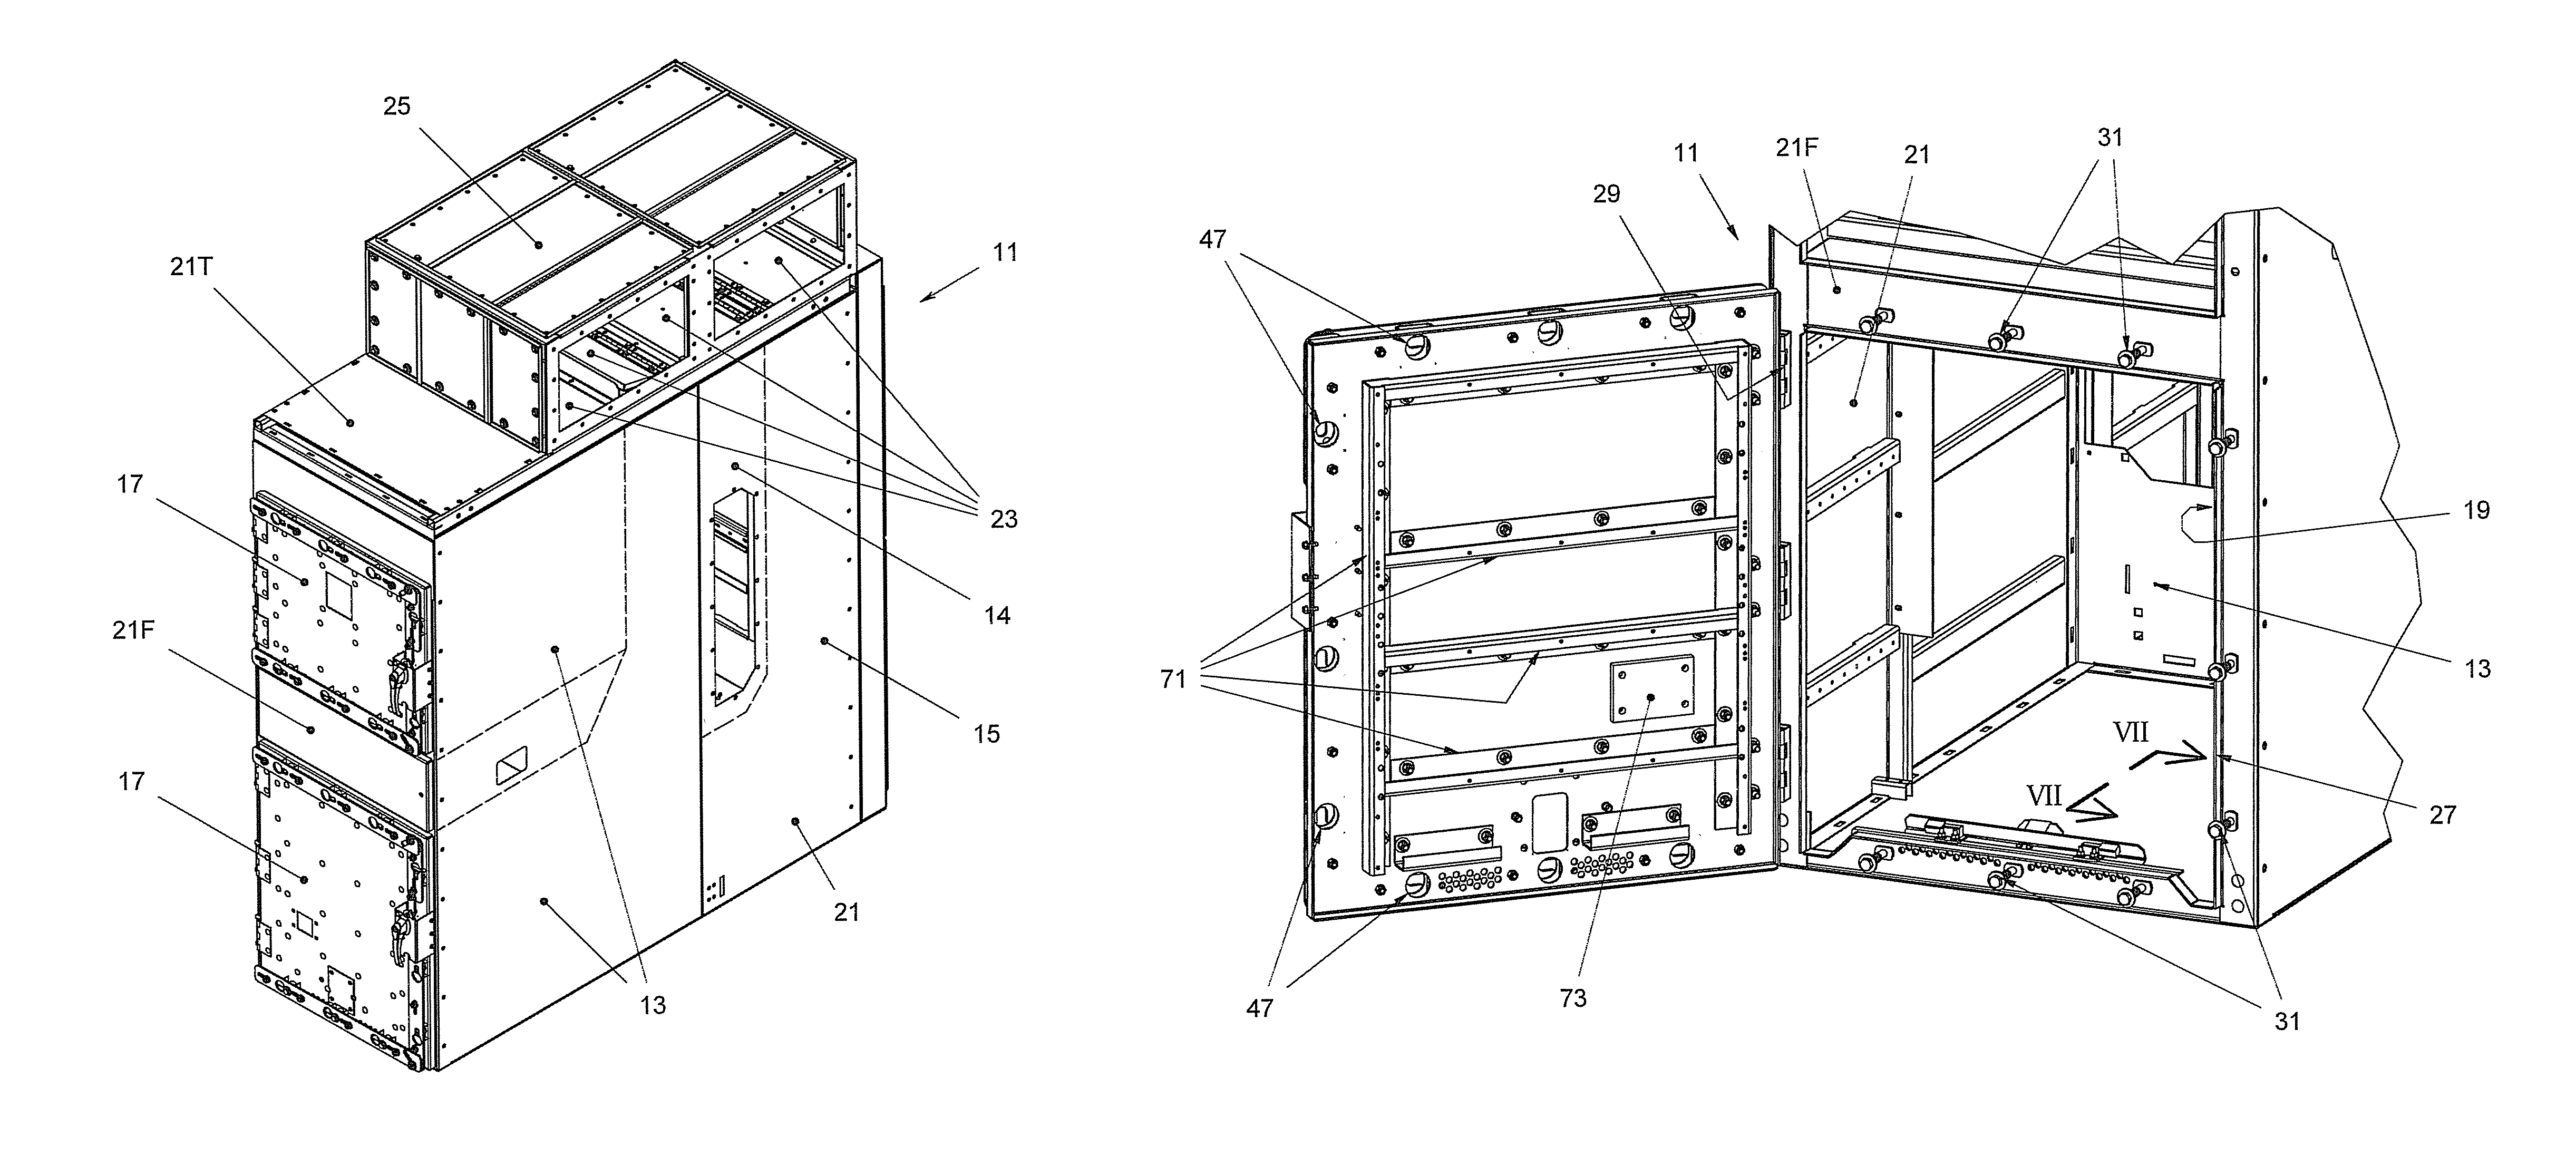 Arc-resistant switchgear enclosure with door latch mechanism